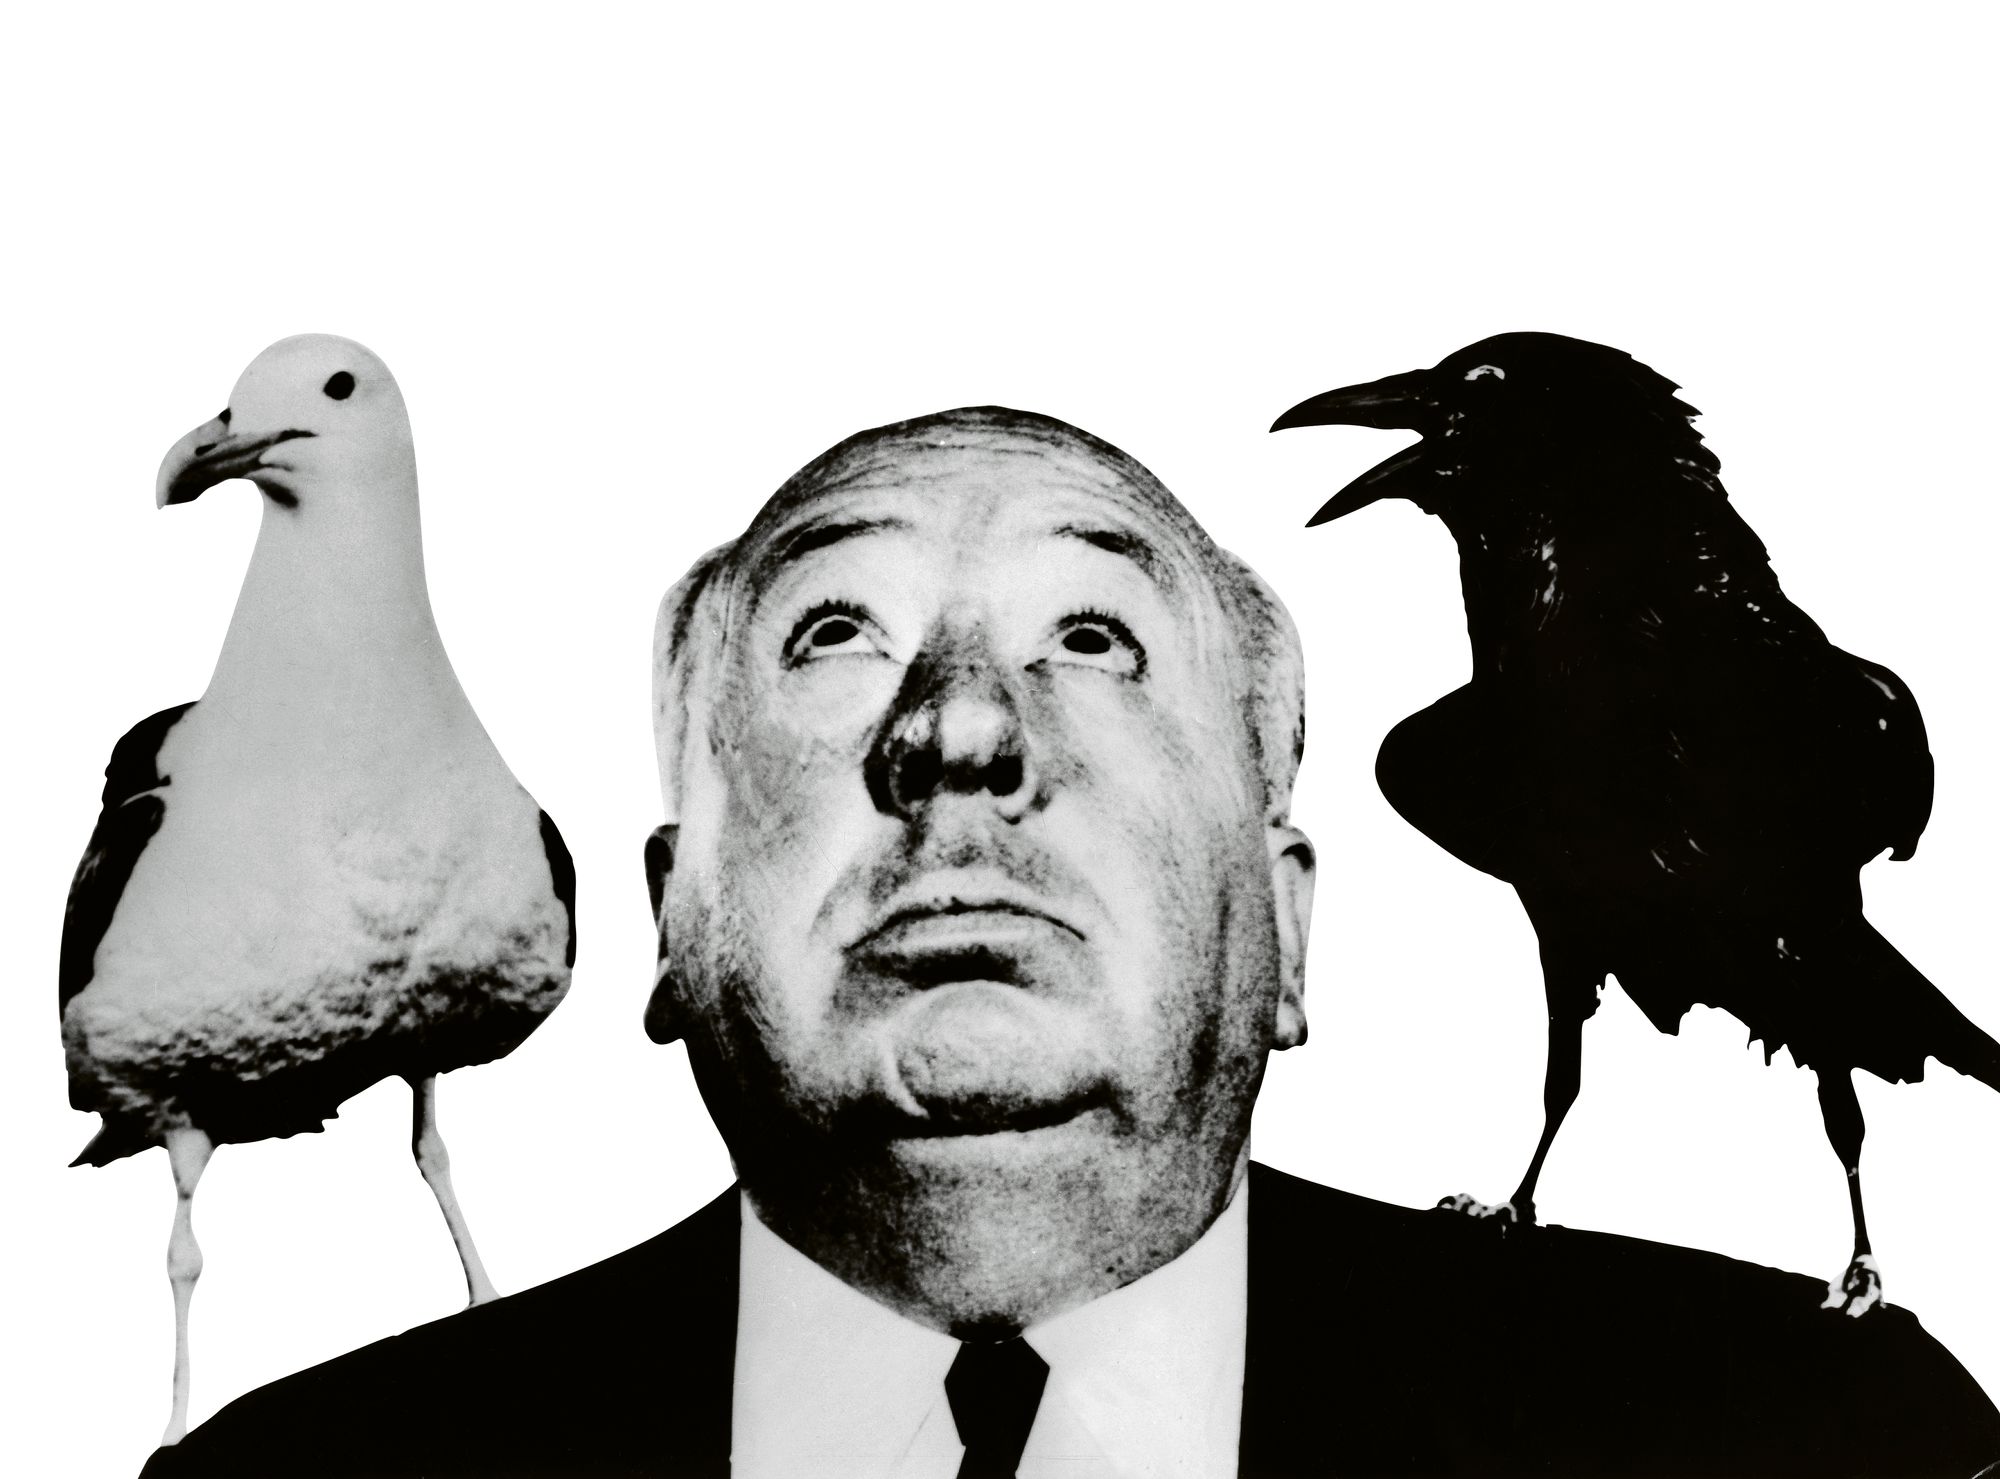 Linnut-elokuvan luoja Alfred Hitchcock pysyi todellisuudessa kaukana linnuista, myös kuvauksissa. © All over press